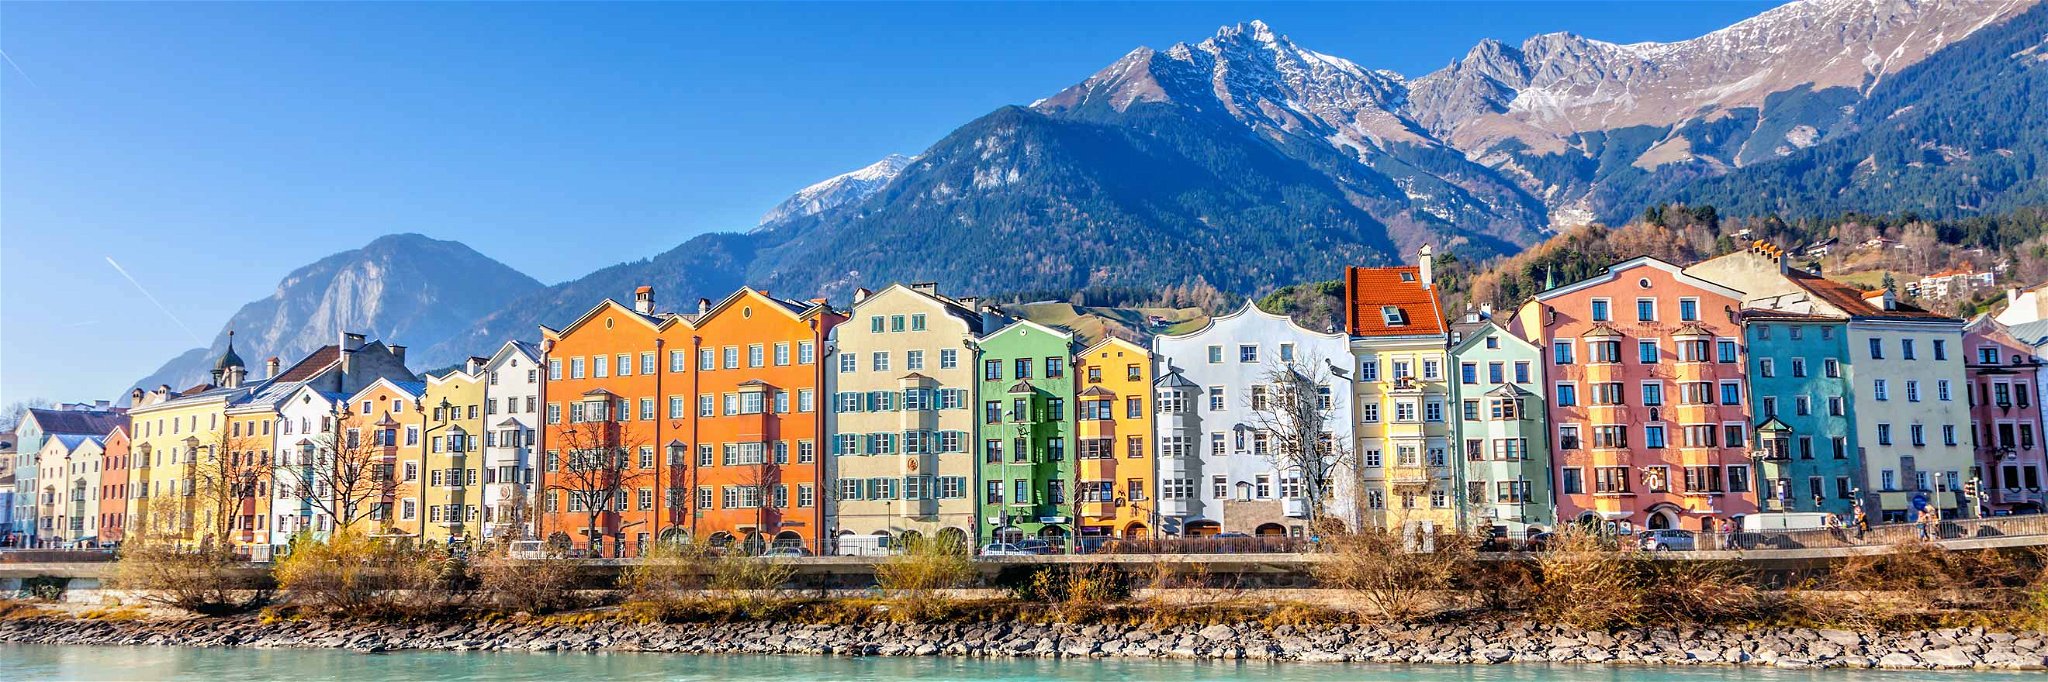 Innsbruck zählt zu den am wenigsten mit Stress belasteten Städten.